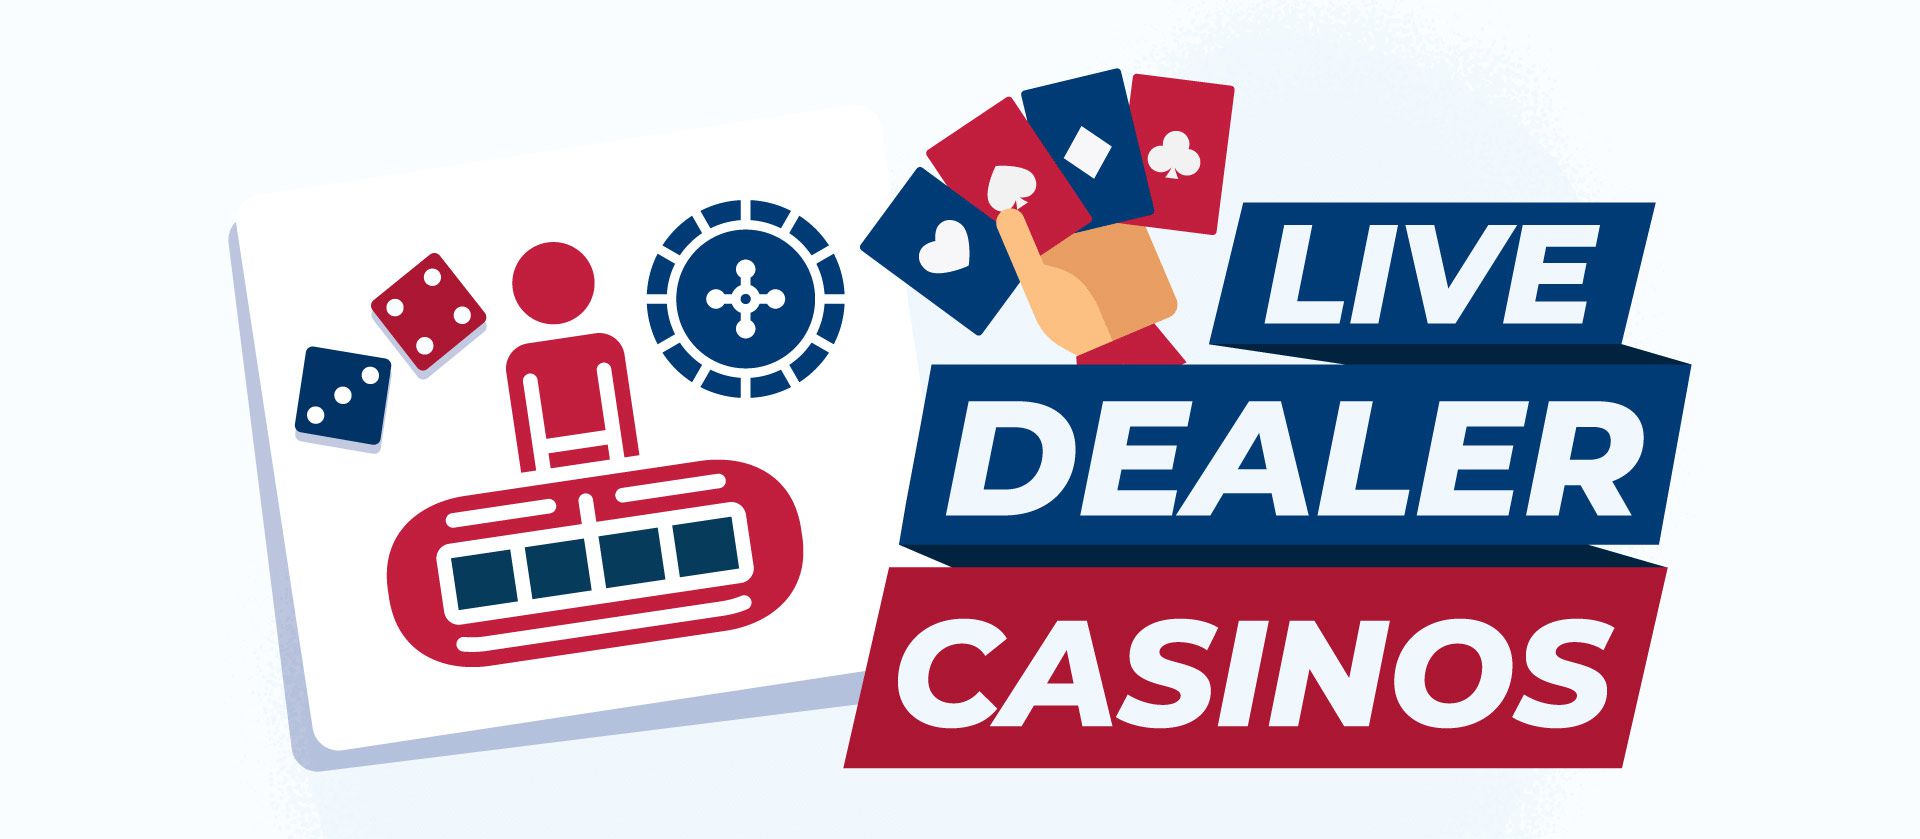 Live dealer casino in Canada.